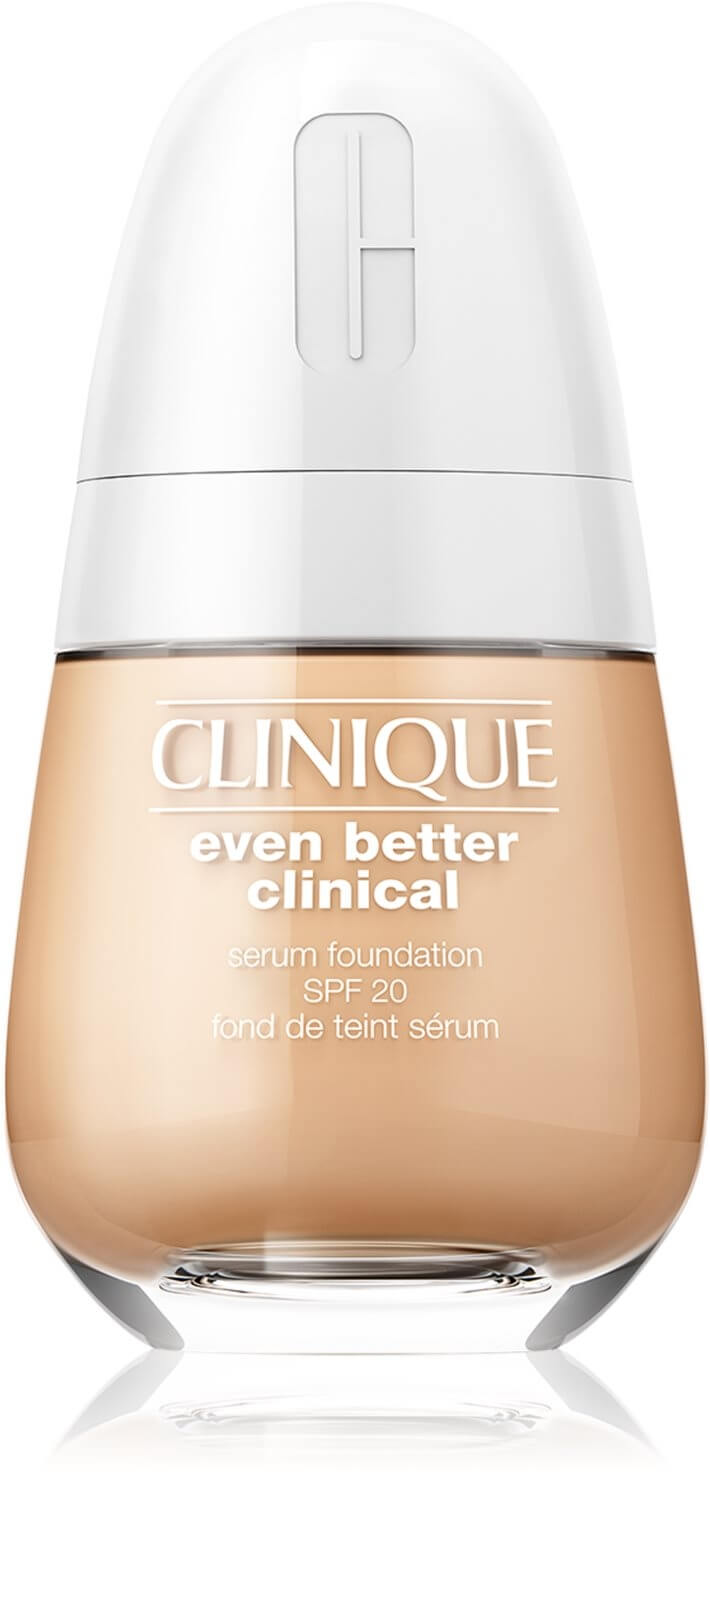 Clinique Pečující make-up SPF 20 Even Better Clinical (Serum Foundation) 30 ml WN 46 Golden Neutral